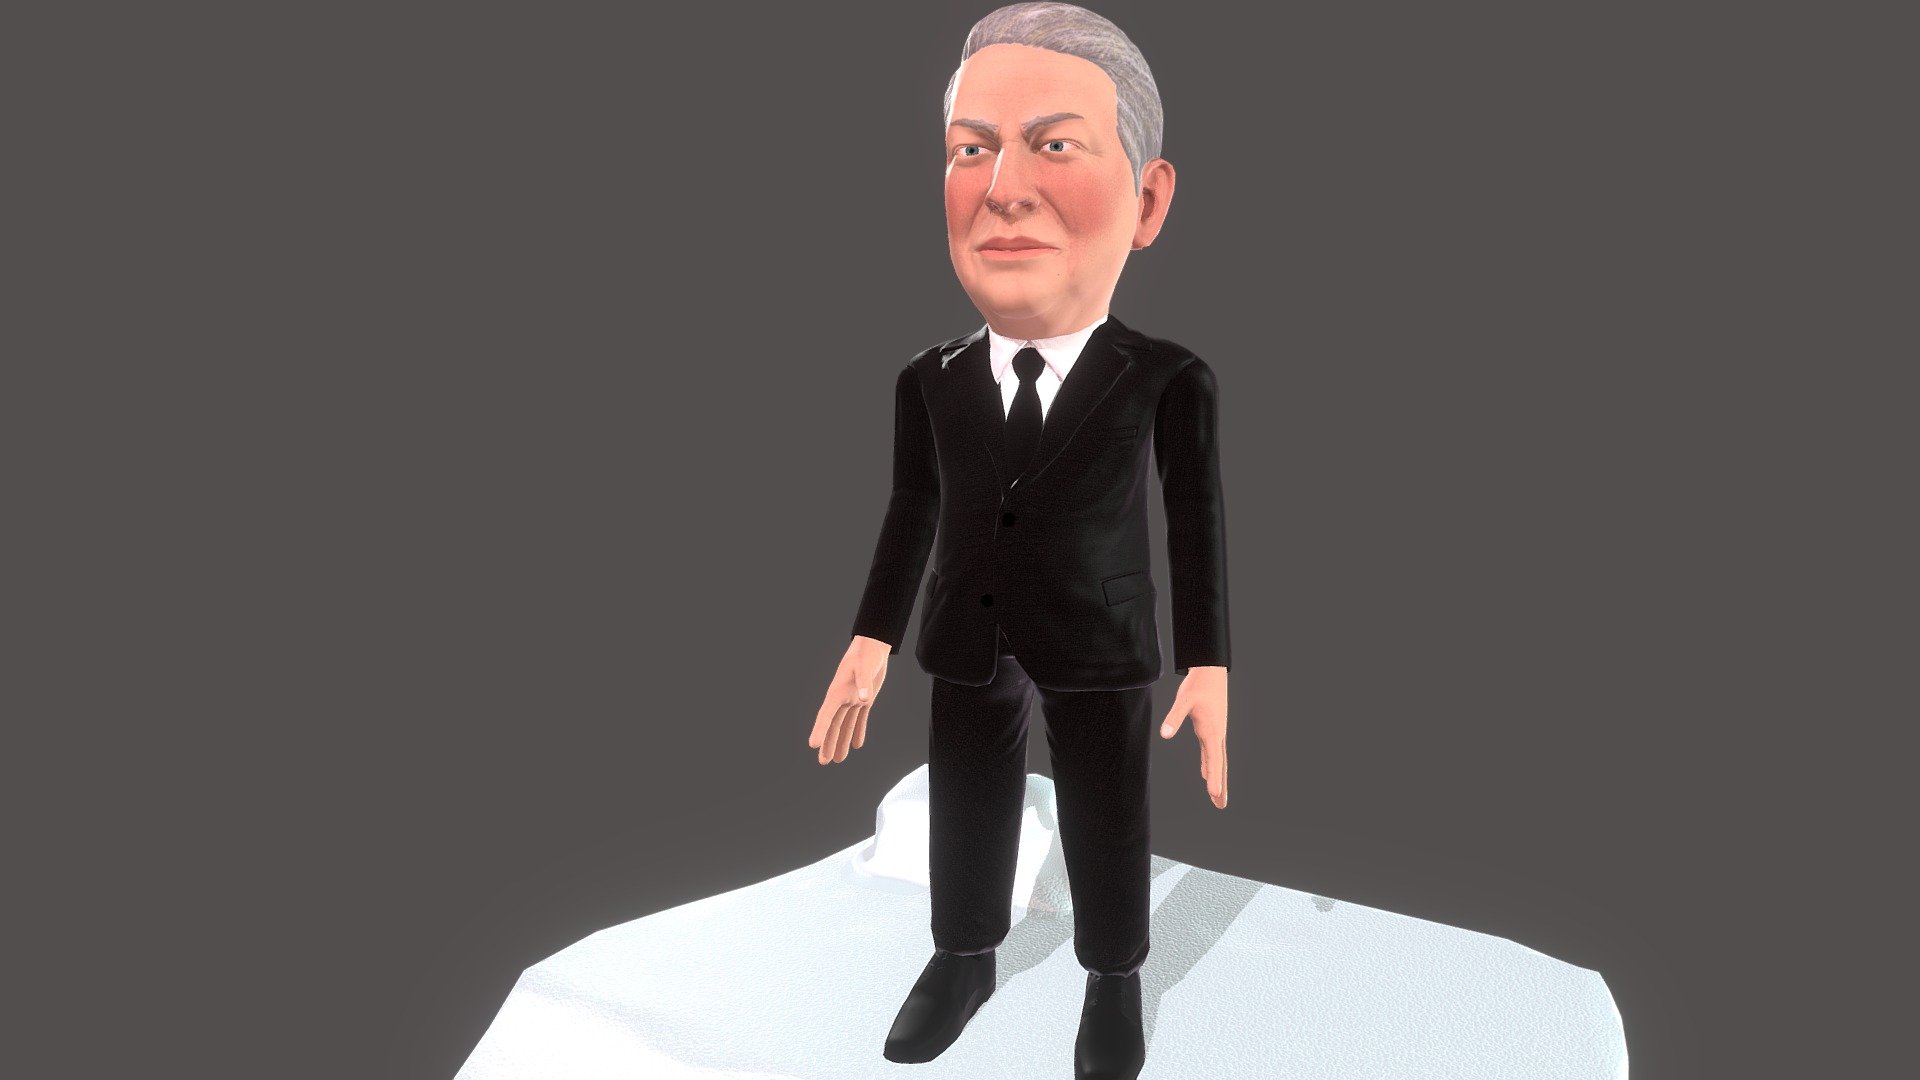 Al Gore Caricature